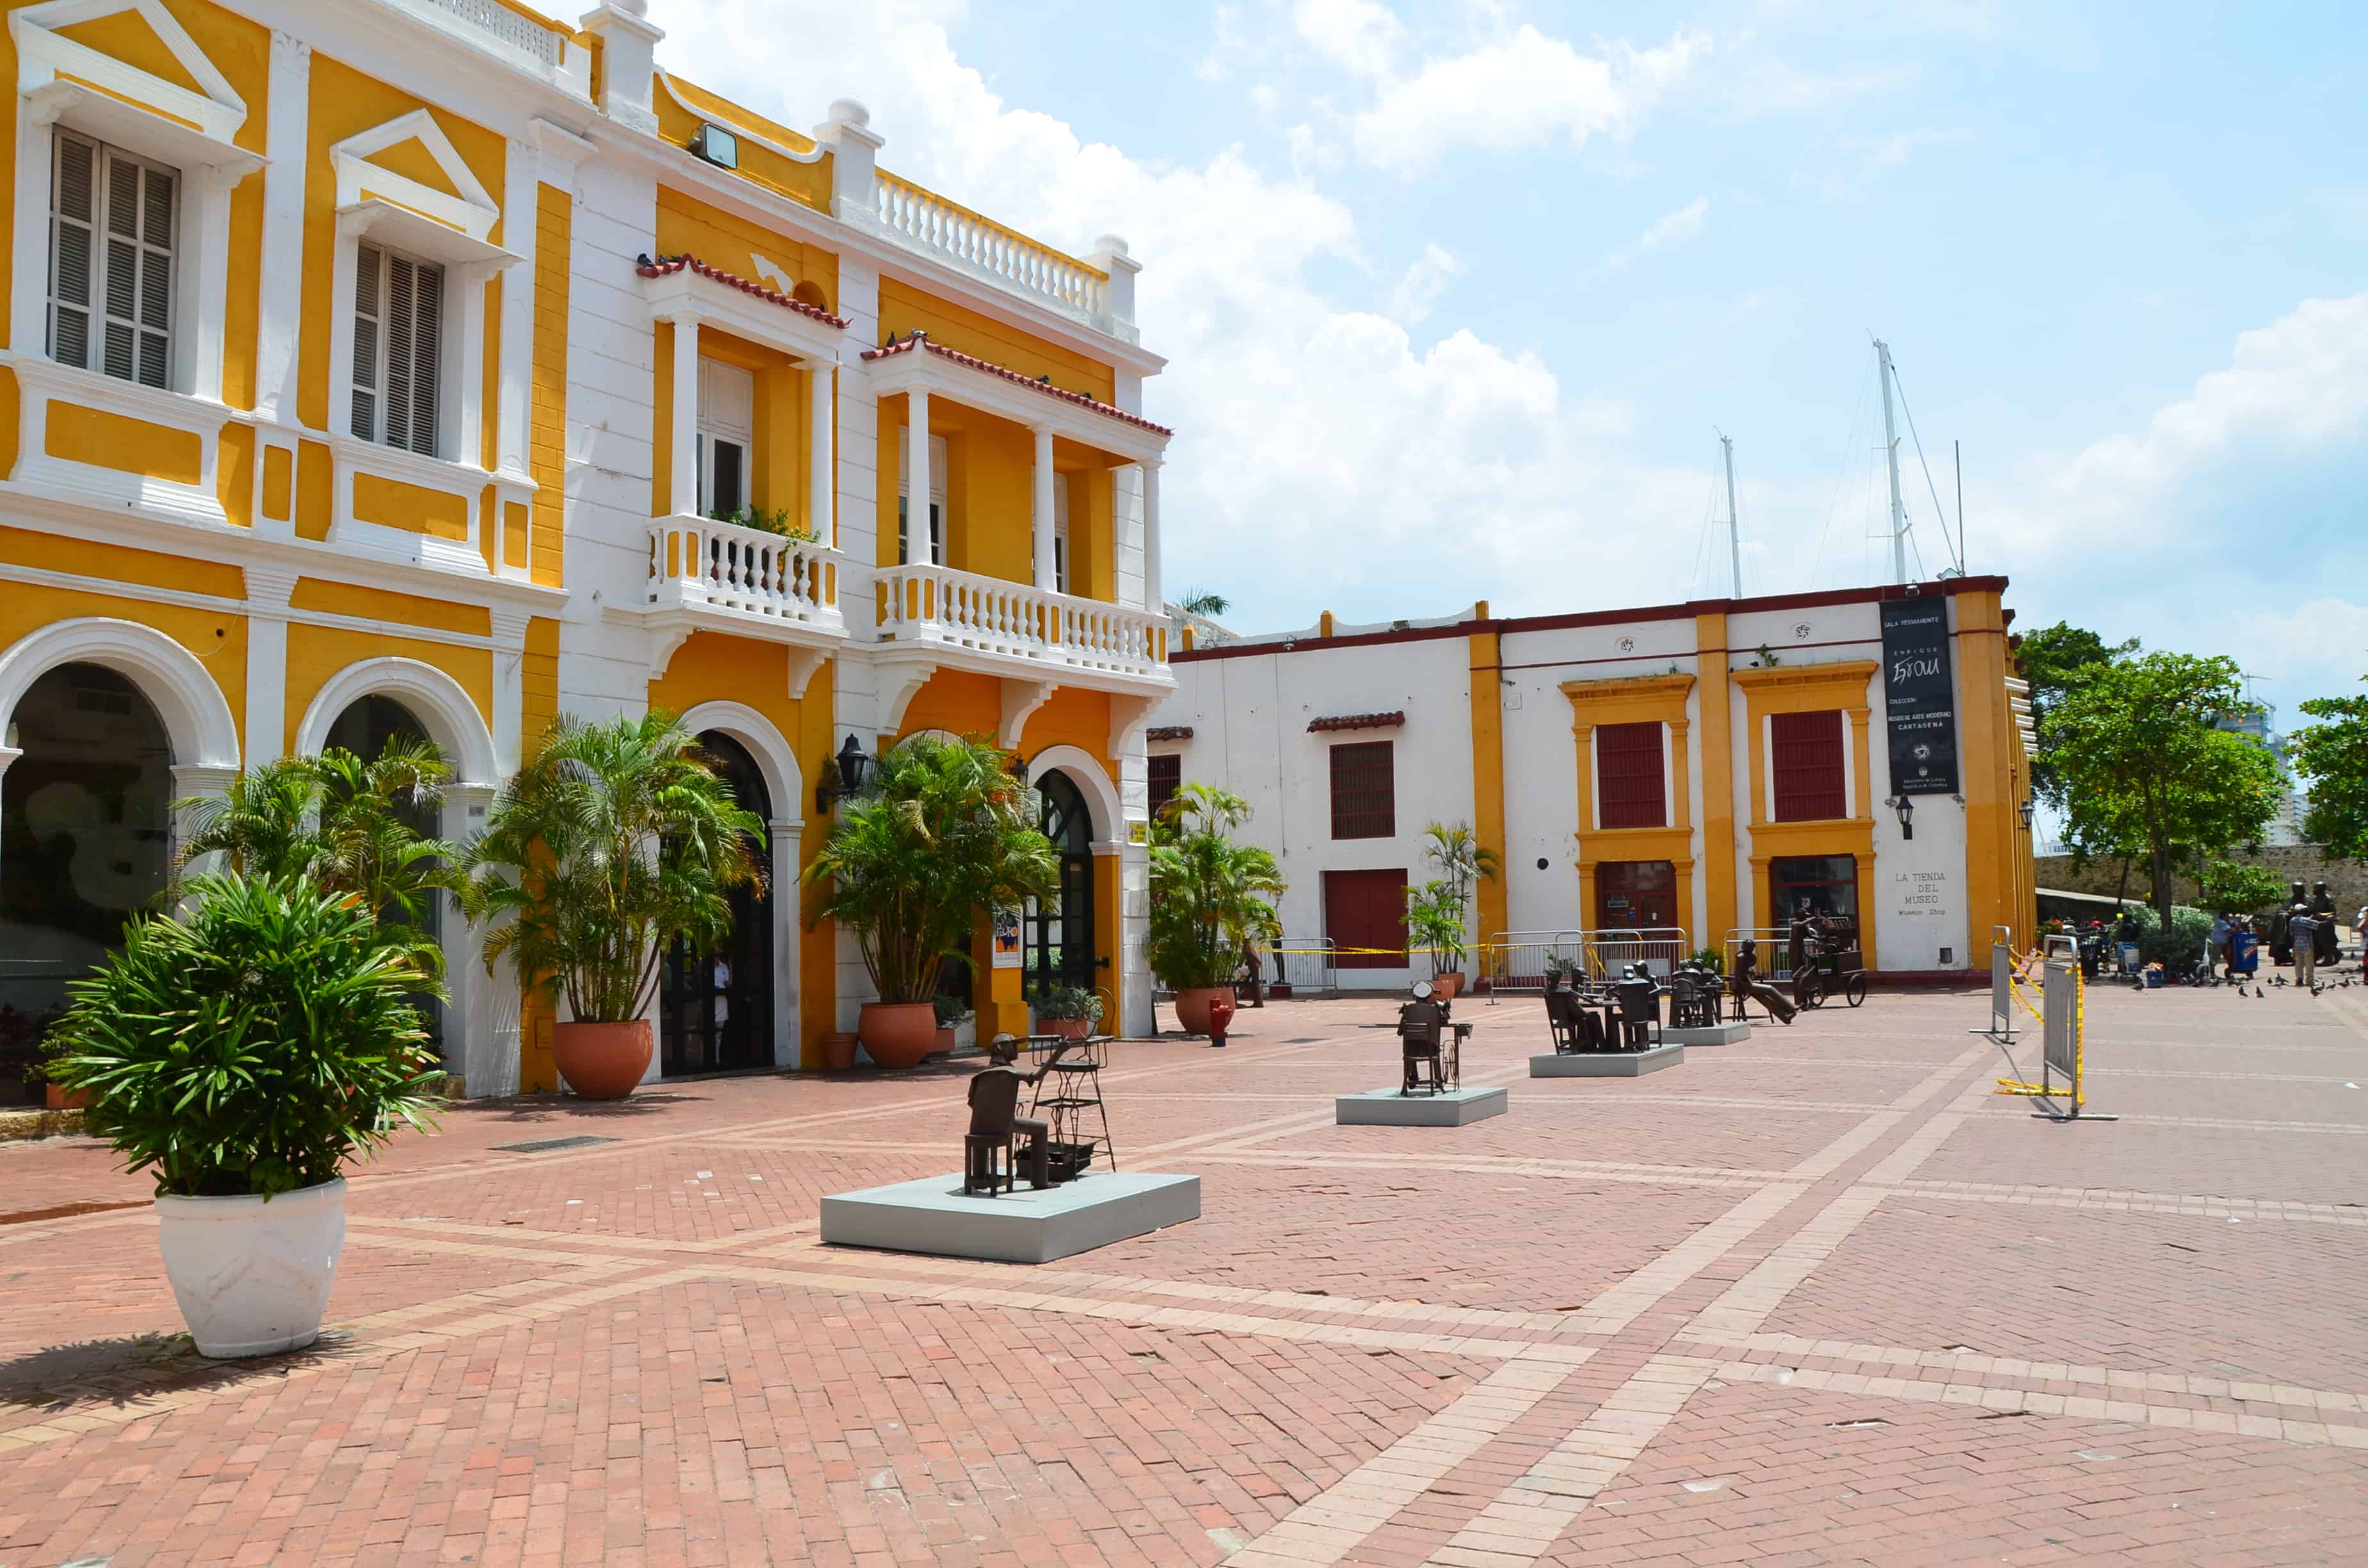 Plaza de San Pedro Claver in El Centro, Cartagena, Bolívar, Colombia